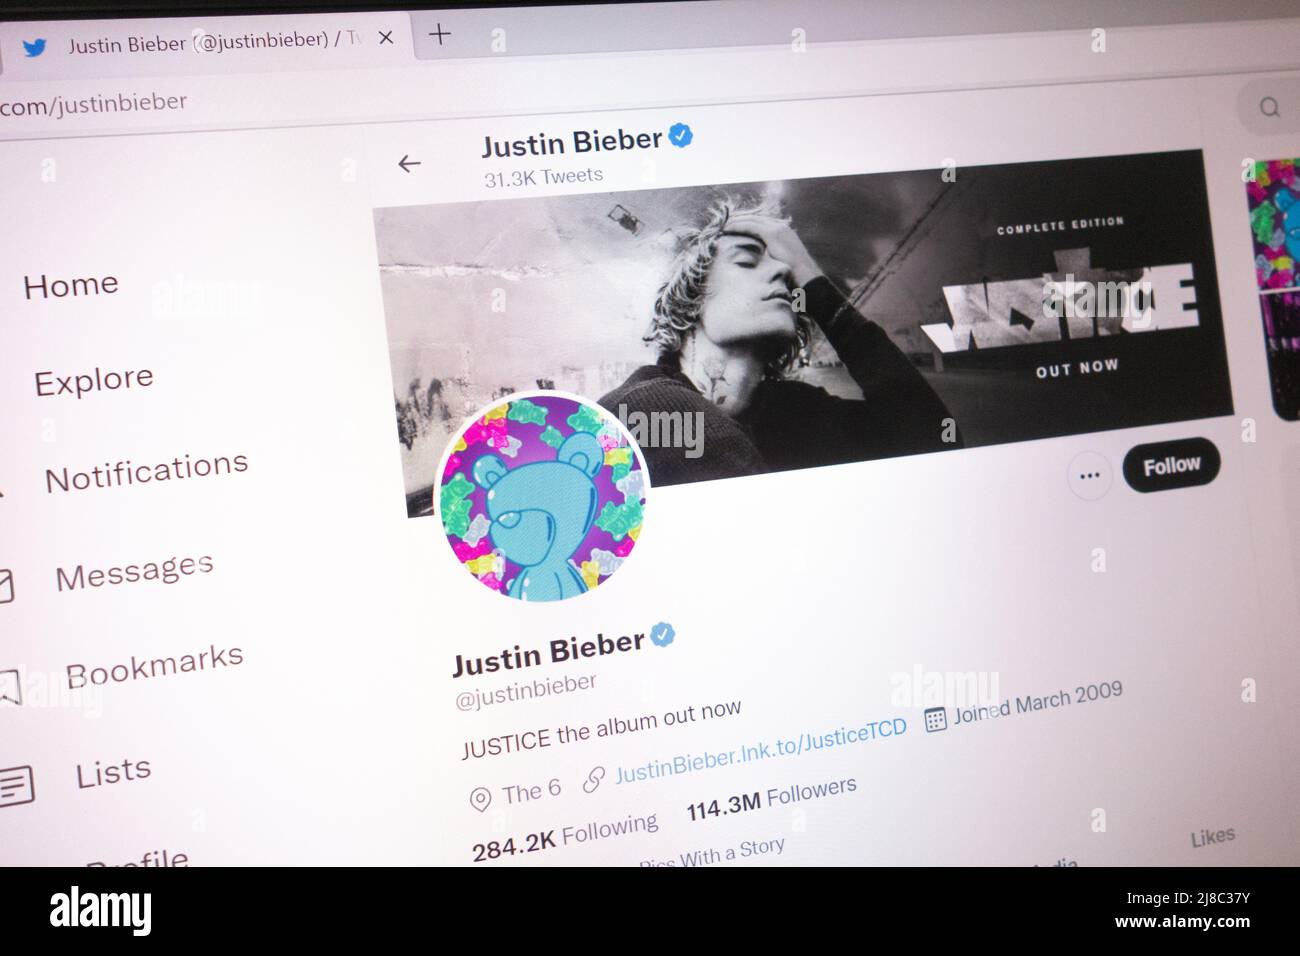 KONSKIE, POLOGNE - 14 mai 2022: Justin Bieber compte Twitter officiel affiché sur l'écran de l'ordinateur portable Banque D'Images